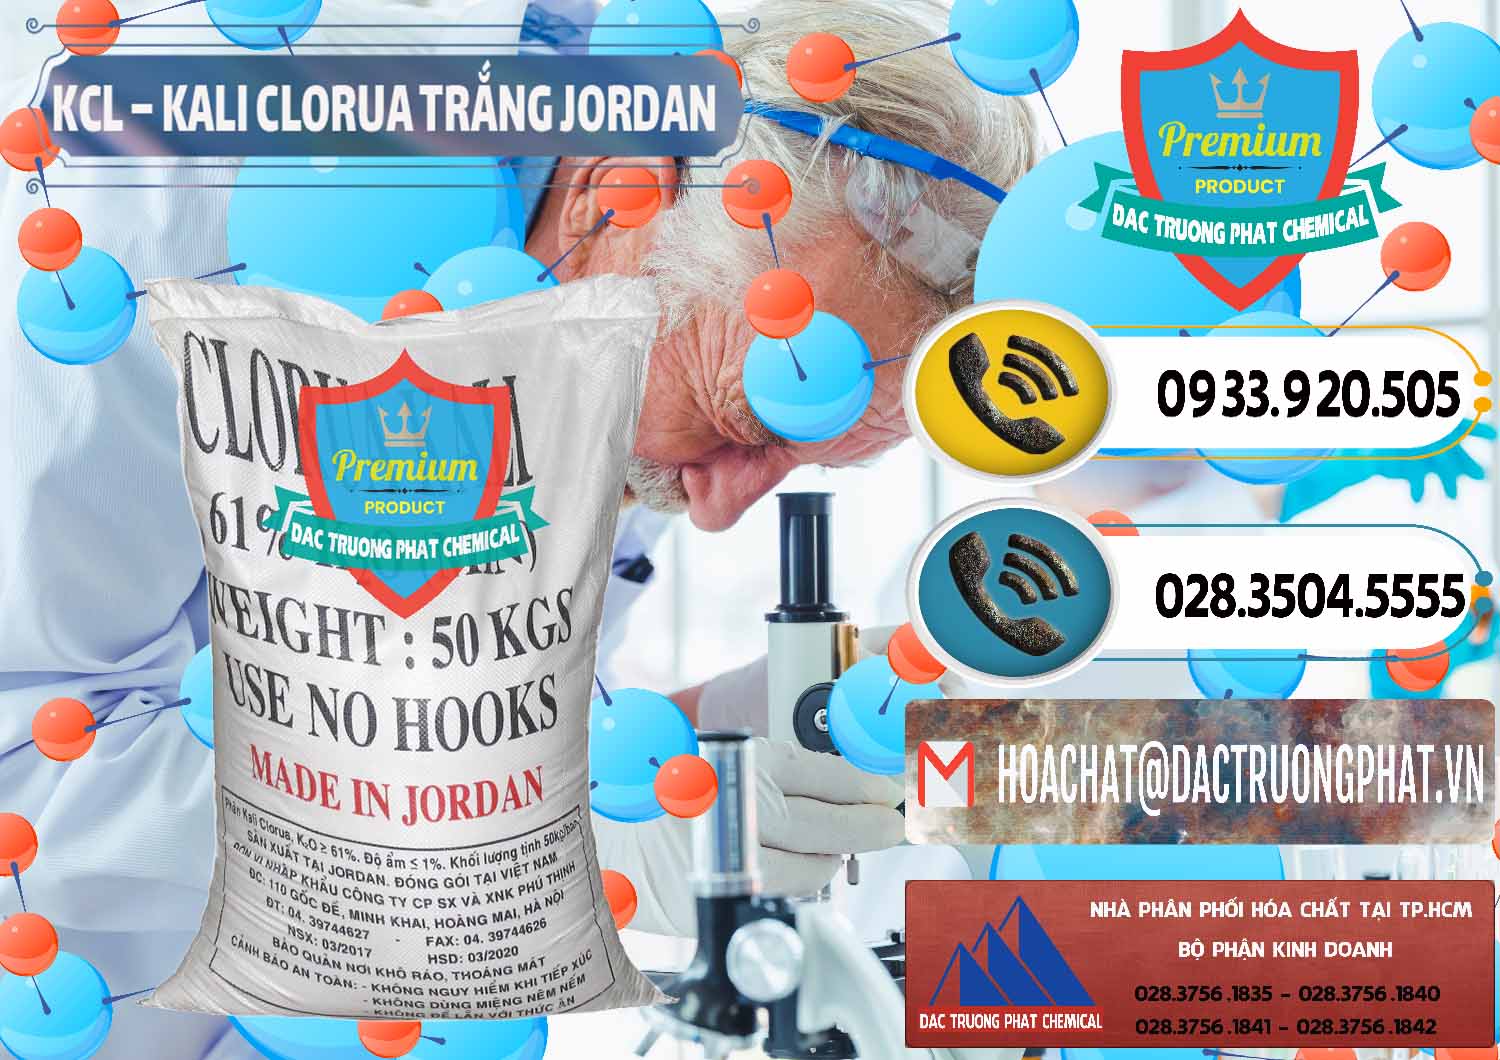 Công ty chuyên bán và phân phối KCL – Kali Clorua Trắng Jordan - 0088 - Nơi phân phối và cung cấp hóa chất tại TP.HCM - hoachatdetnhuom.vn